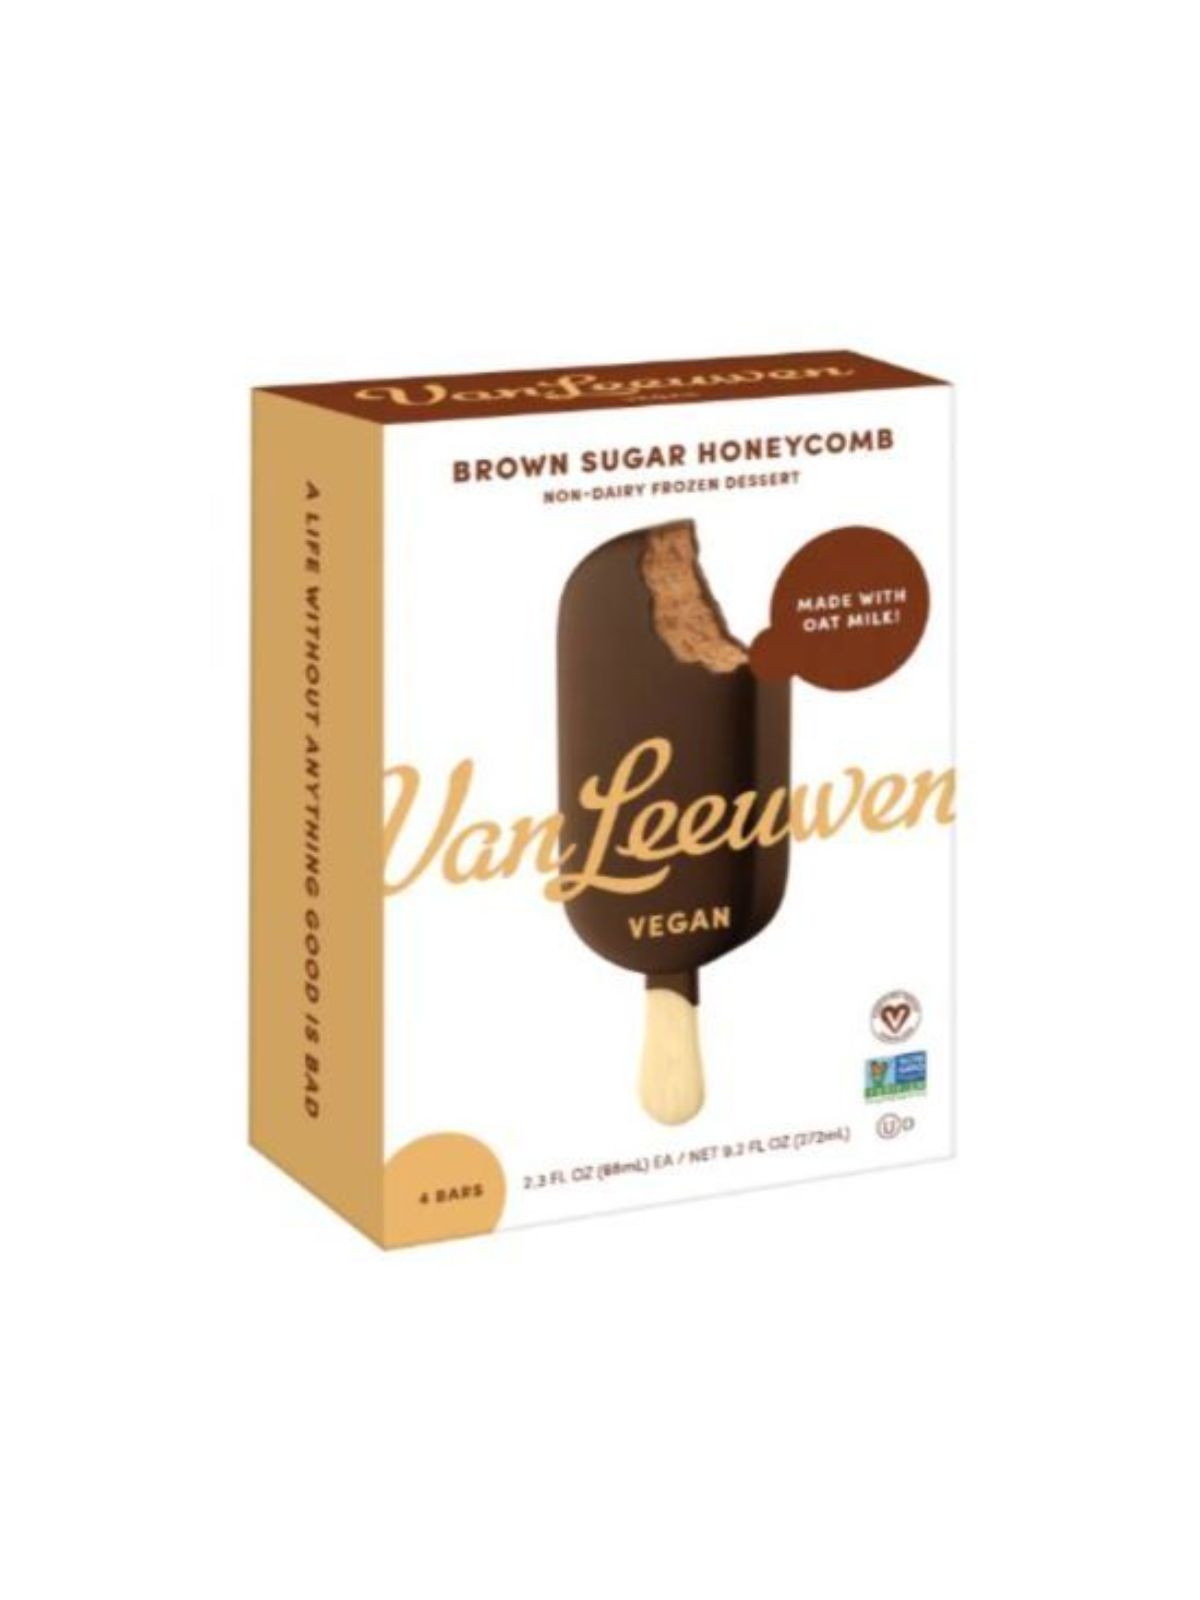 Order Van Leeuwen Vegan Brown Sugar Honeycomb Ice Cream Bar (4 bars) food online from Goodees Cravings store, Los Angeles on bringmethat.com